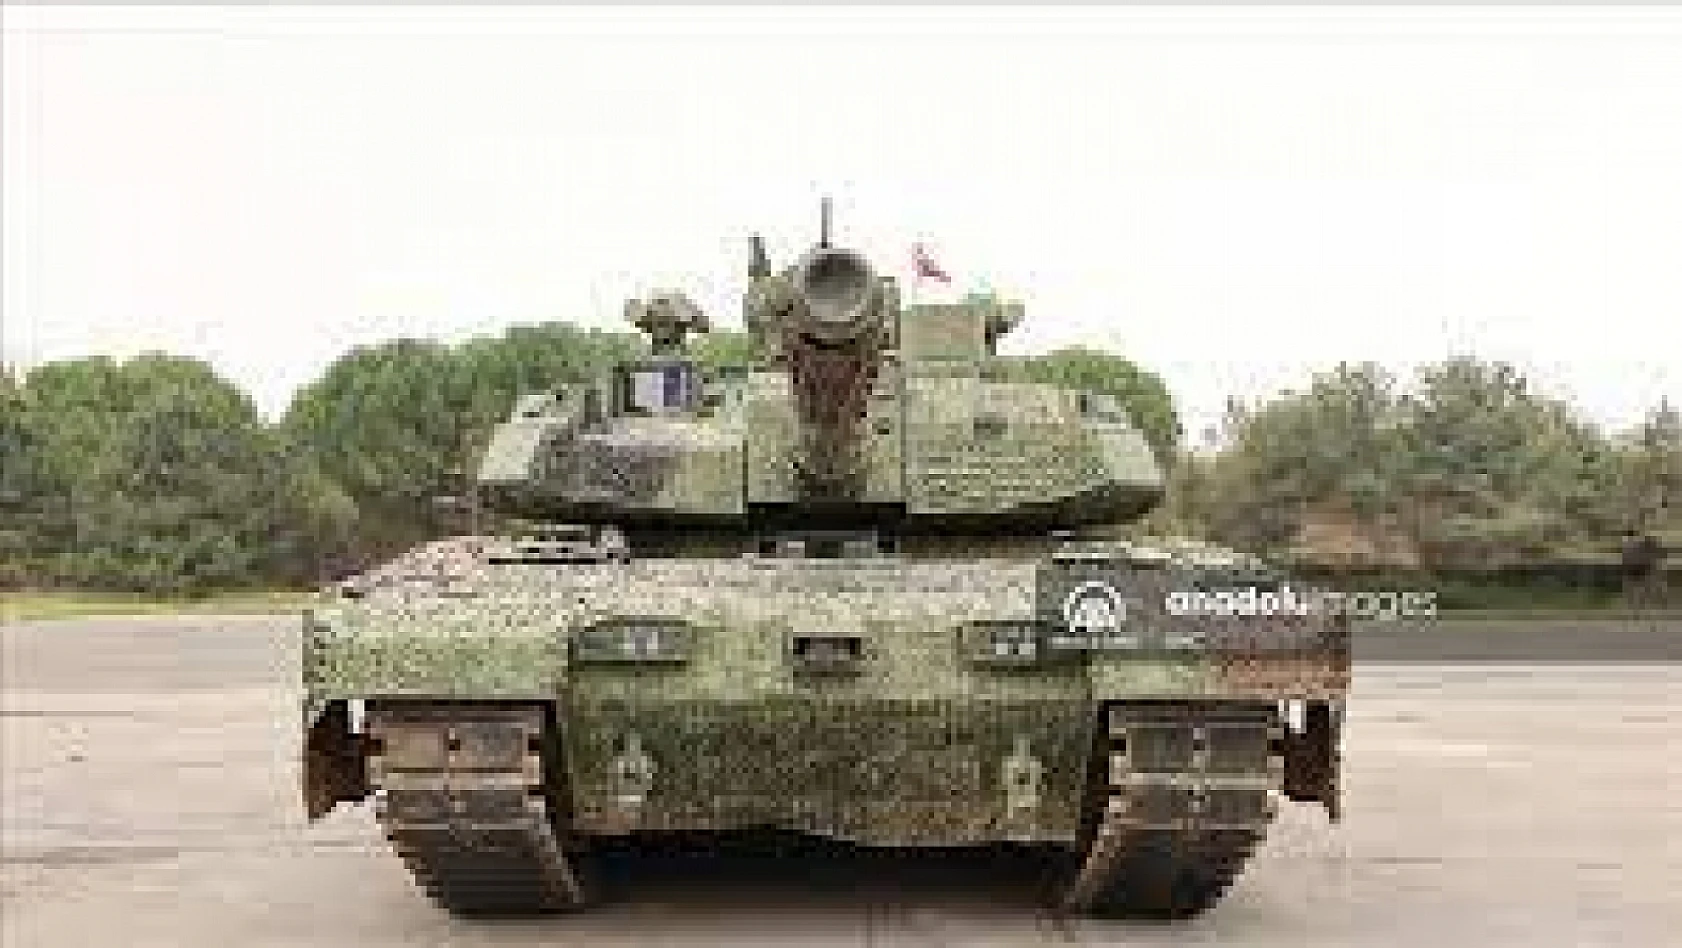 Yeni Altay tankı Türk Silahlı Kuvvetleri sınavına hazır